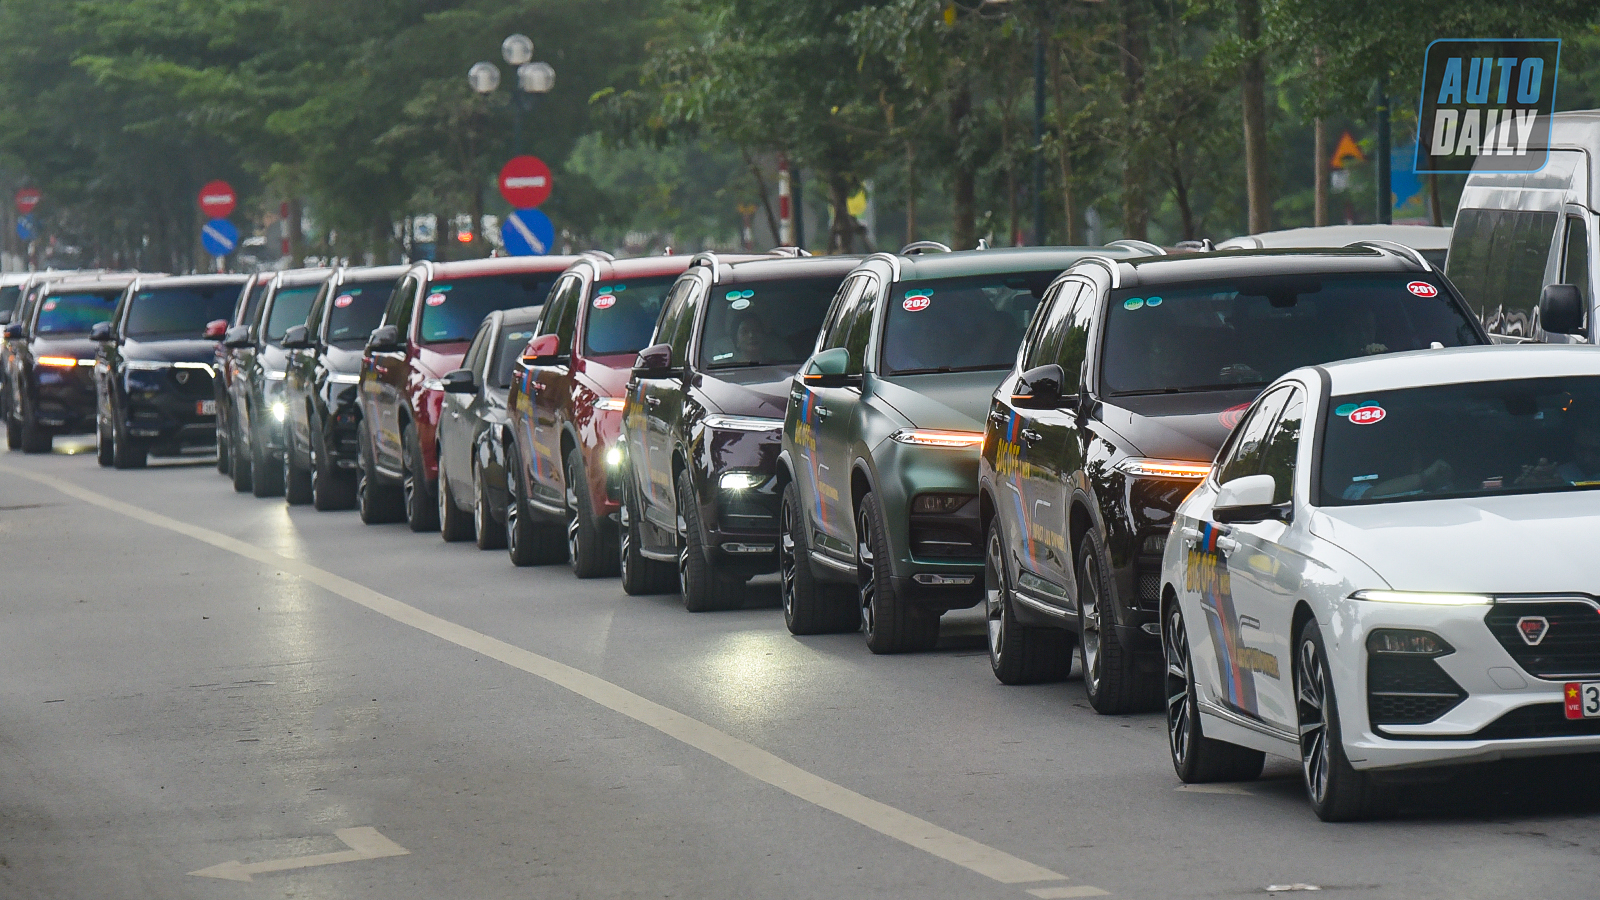 Chùm ảnh gần 60 xe VinFast Lux tại Hà Nội xuất phát Offline 3 miền tại Hội An dsc-6324-copy.jpg